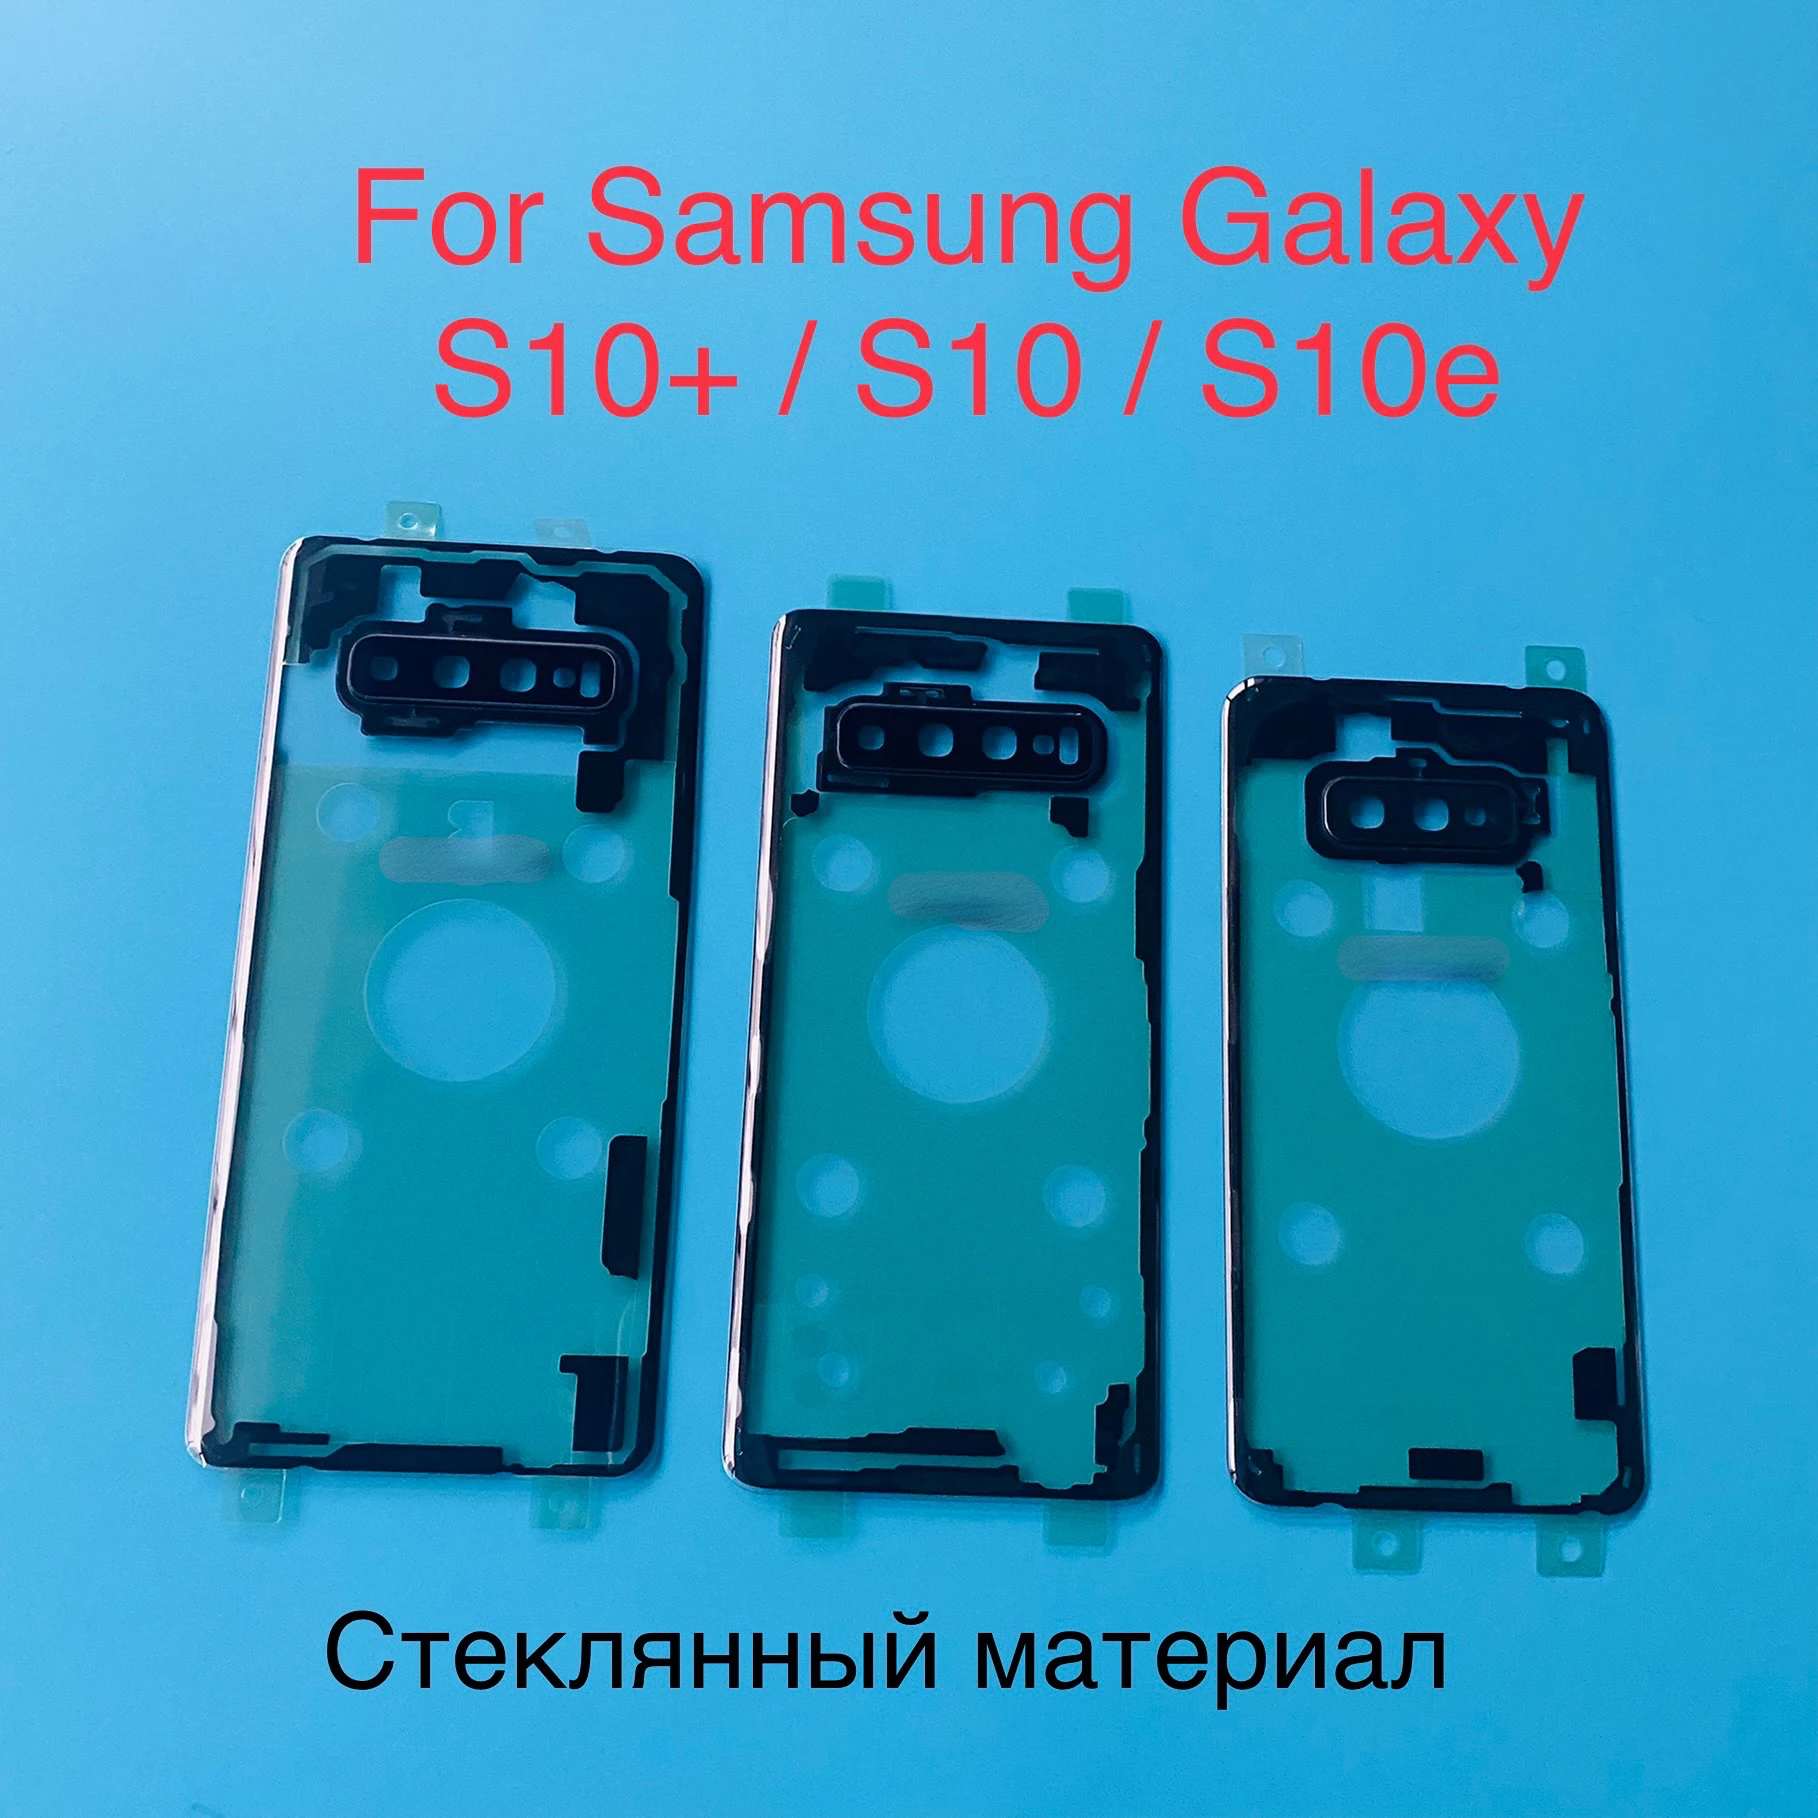 

Прозрачное прозрачное стекло для Samsung Galaxy S10 5G S10 Plus S10e, Крышка батарейного отсека, Задняя стеклянная панель, замена корпуса